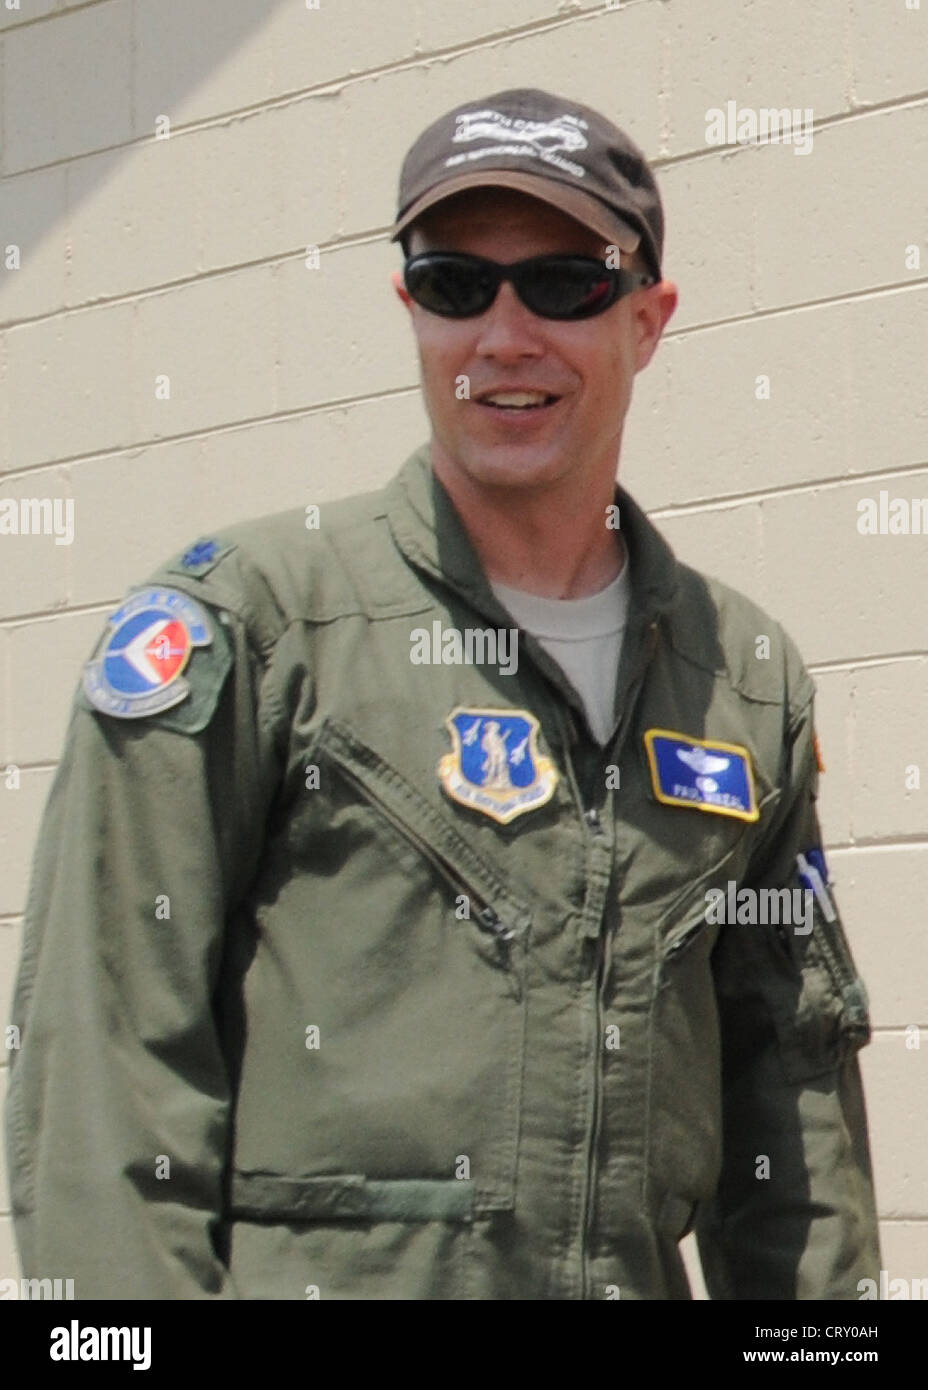 C-130 Pilot LT. Col. Paul K. Mikeal, einer von vier Besatzungsmitgliedern, die am 1. Juli 2012 getötet wurden, nachdem ihre C-130 bei der Bekämpfung von Waldbränden in South Dakota abgestürzt war. Stockfoto